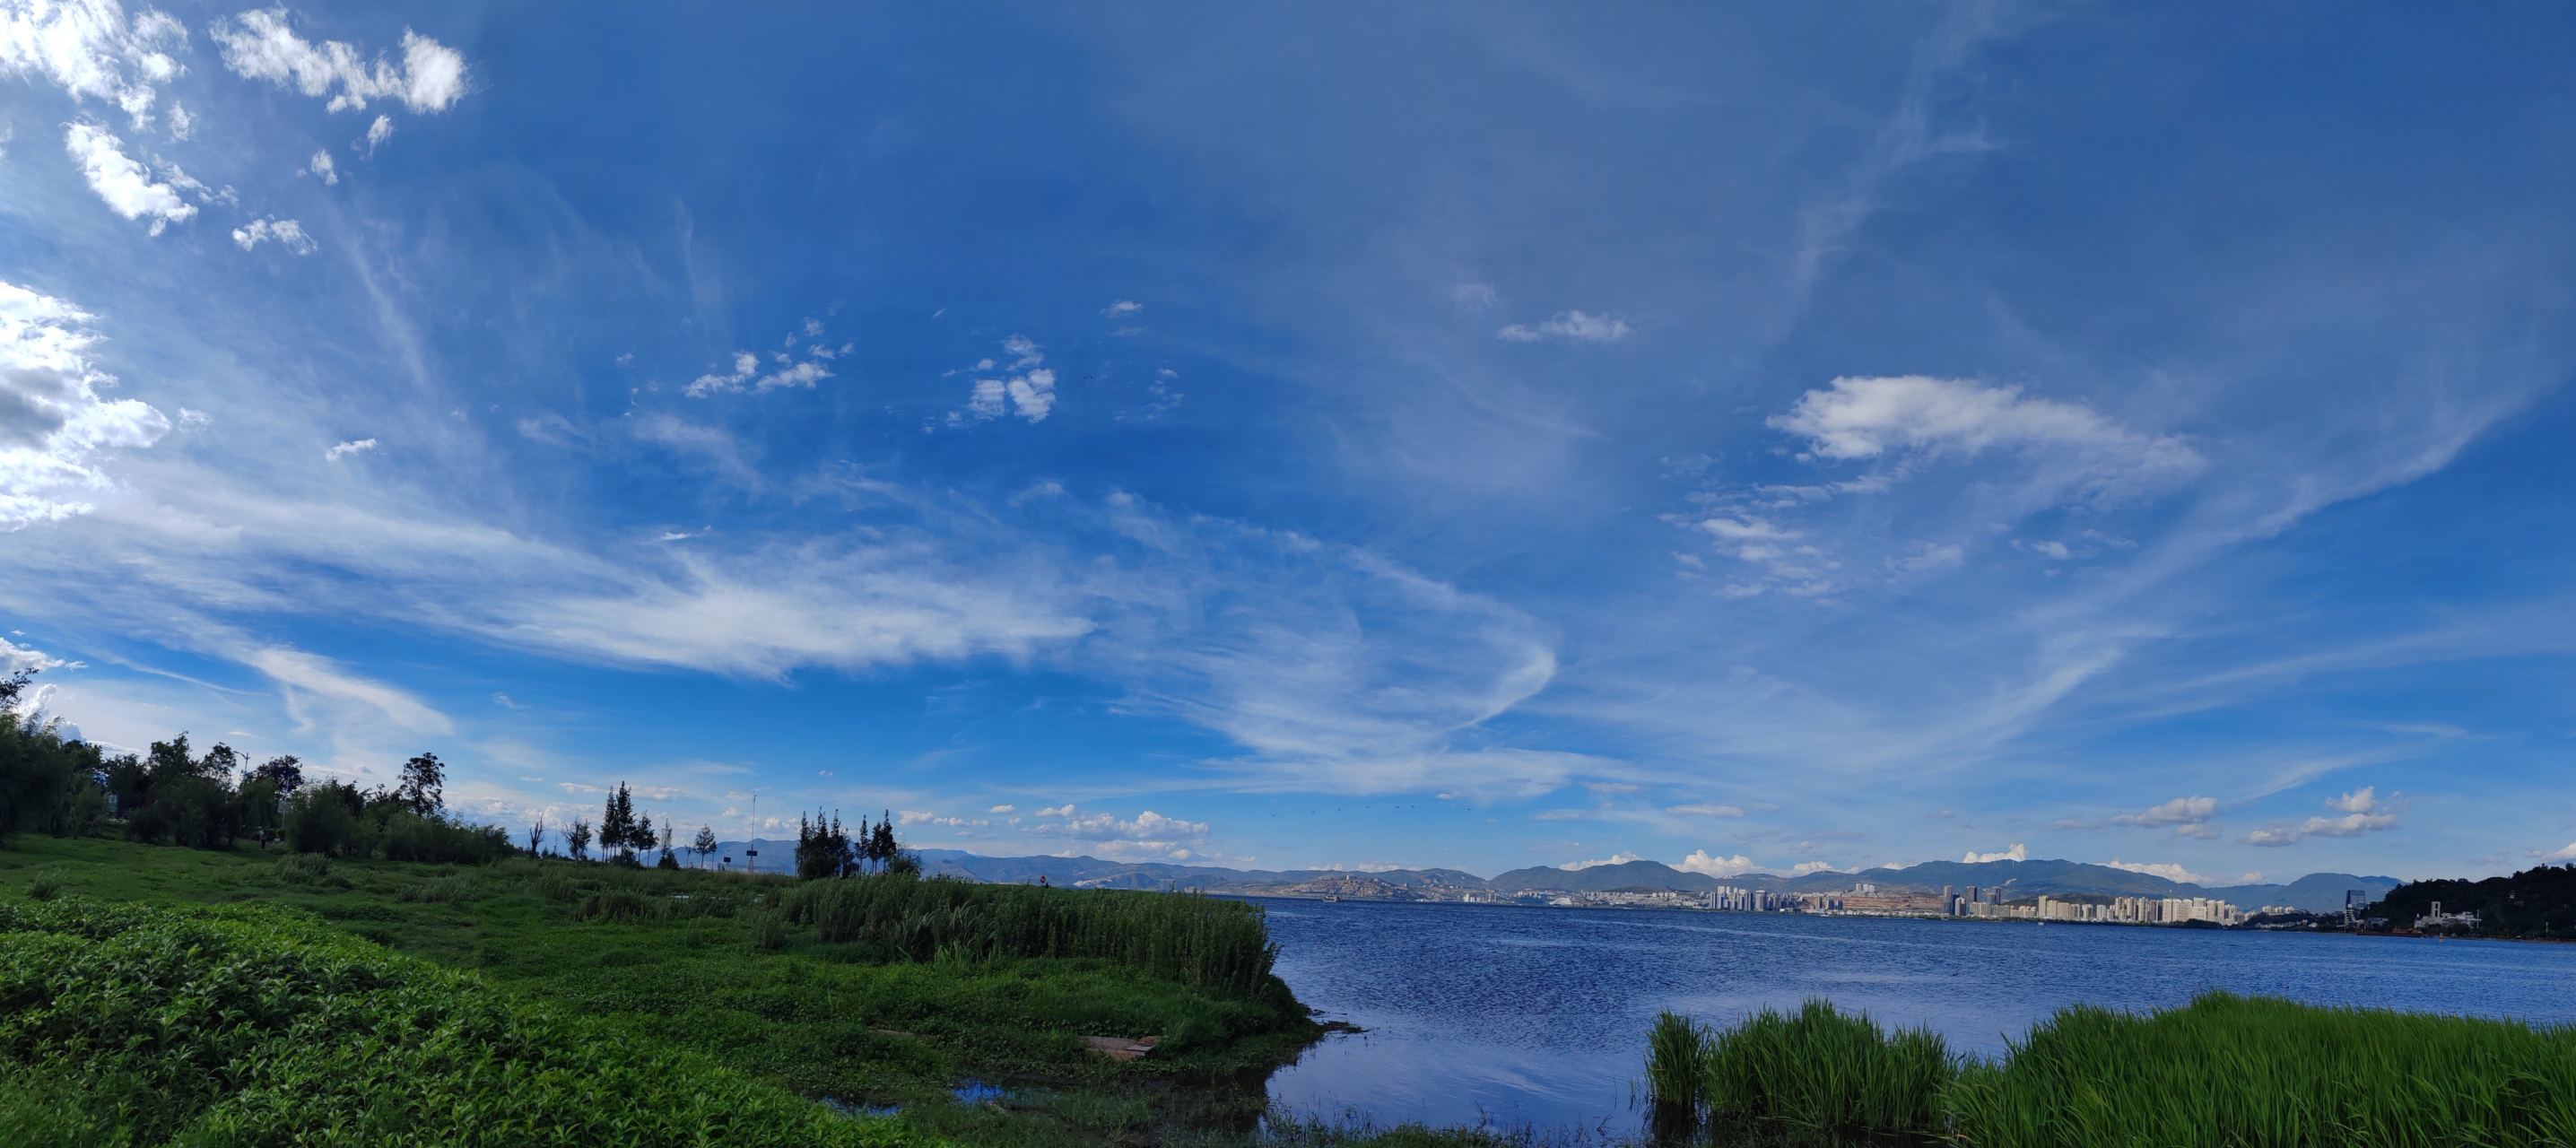 洱海全景图图片